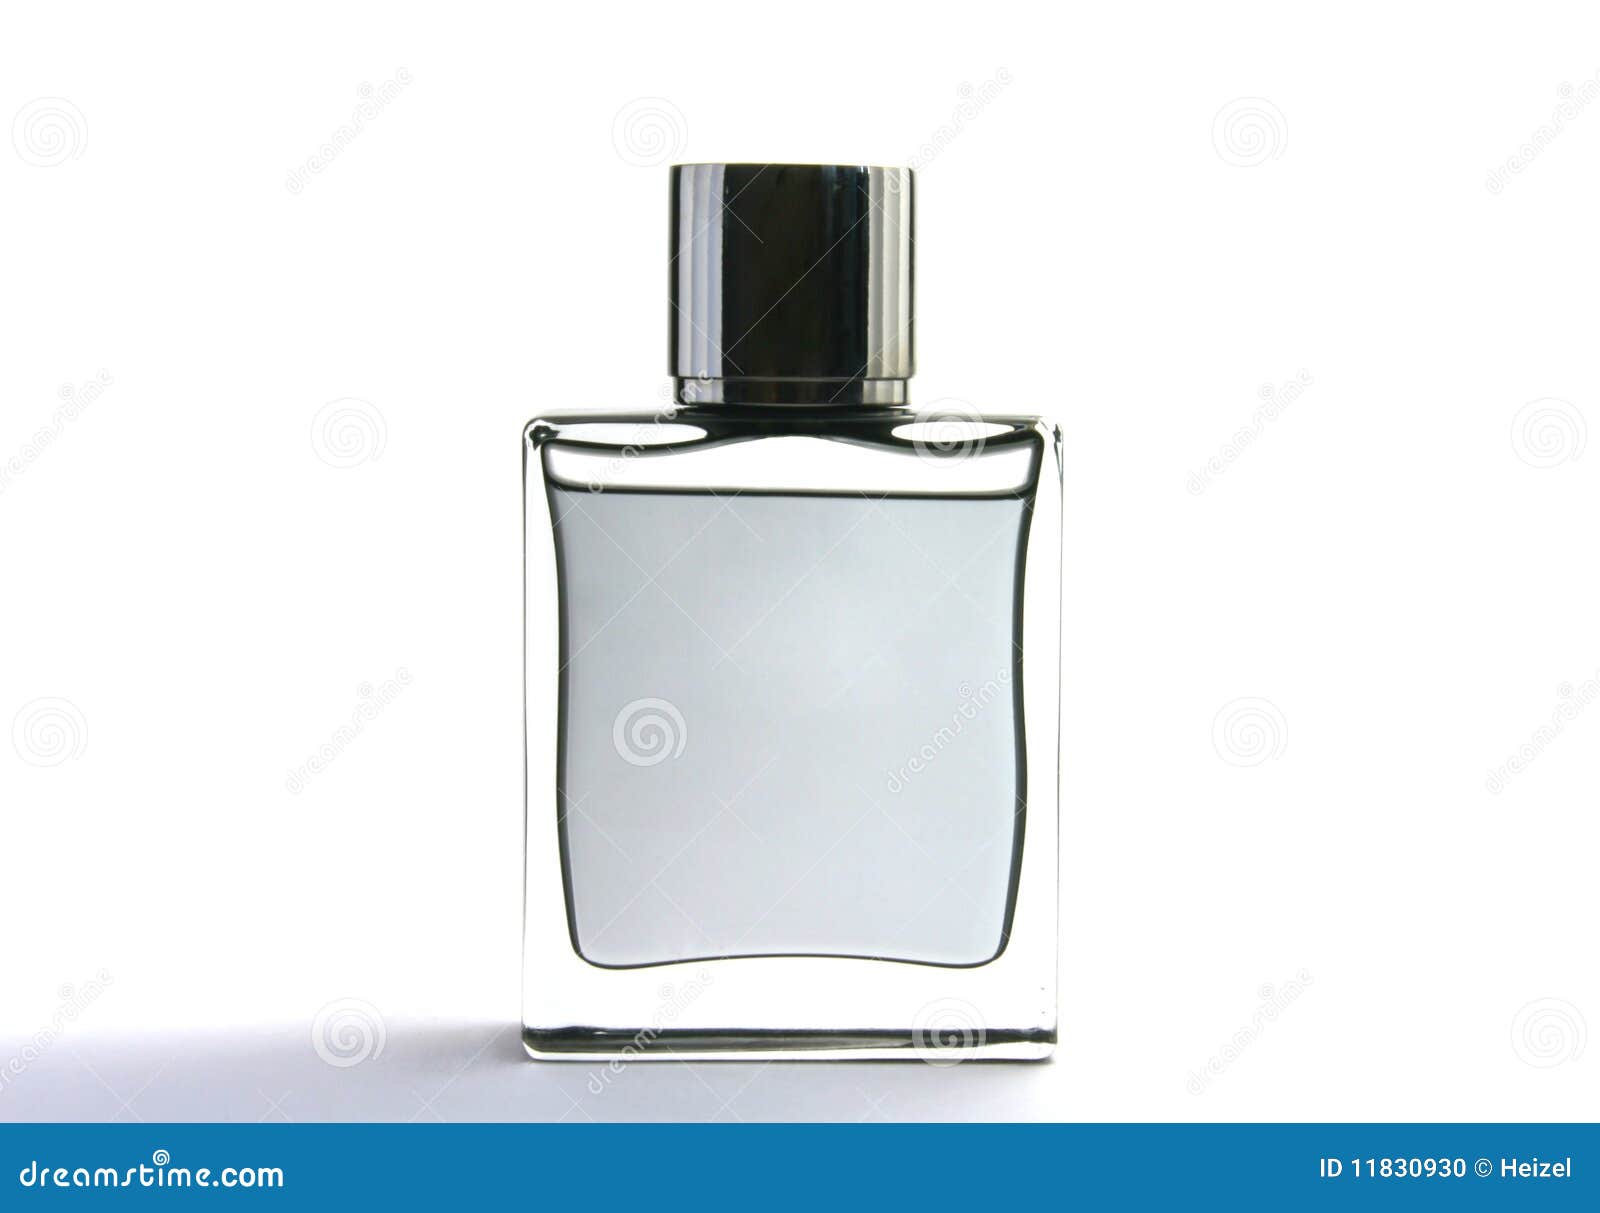 mens perfume bottle